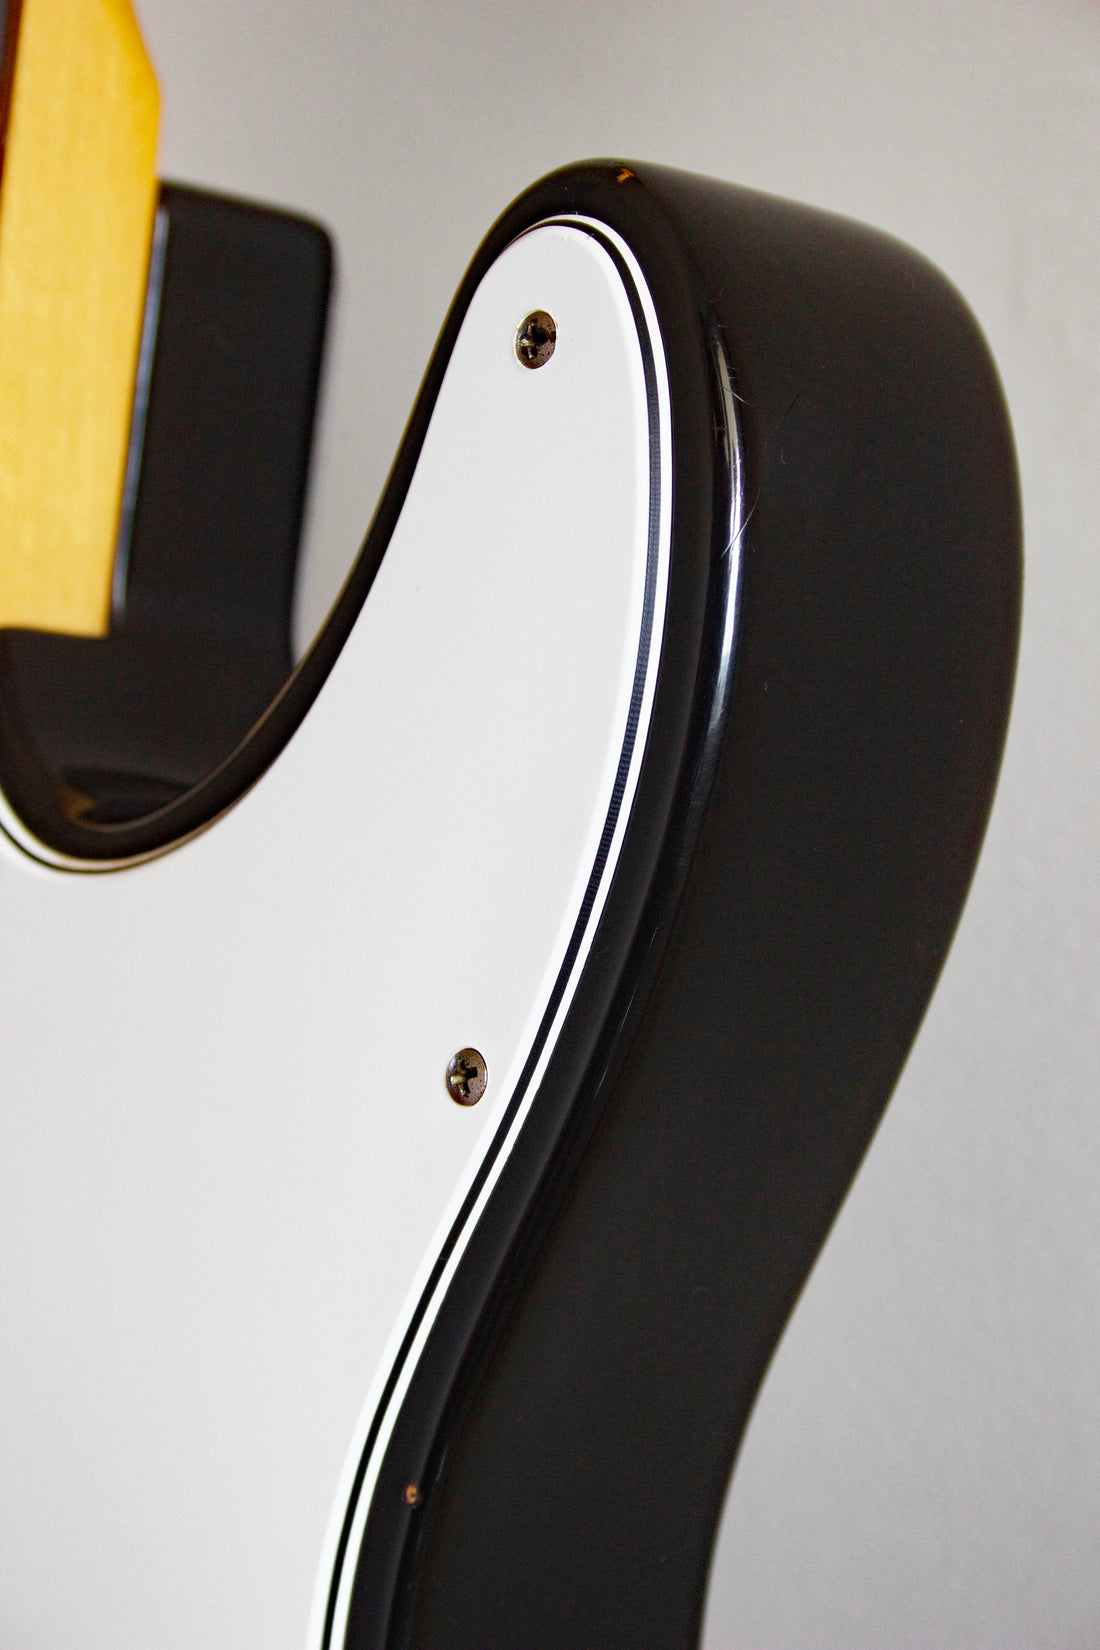 Fender American Standard Telecaster Sunburst 1997